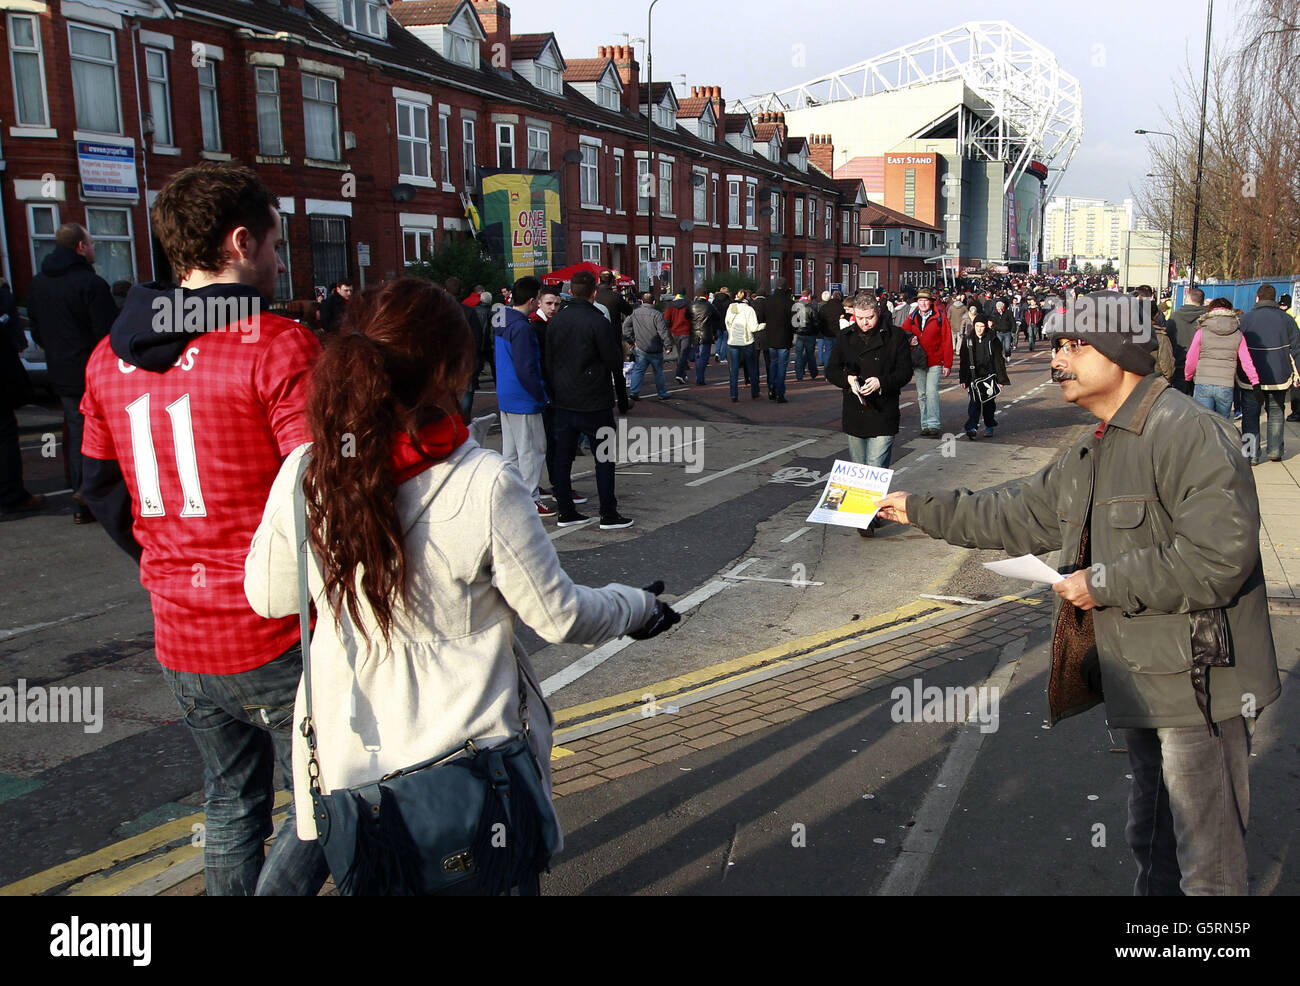 Santanu Pal, Vater des vermissten indischen Studenten Souvik Pal, verteilt Flugblätter an Fans, die sich auf dem Weg zum Fußballspiel zwischen Manchester United und Liverpool im Old Trafford Stadium von United in Manchester befinden. Stockfoto